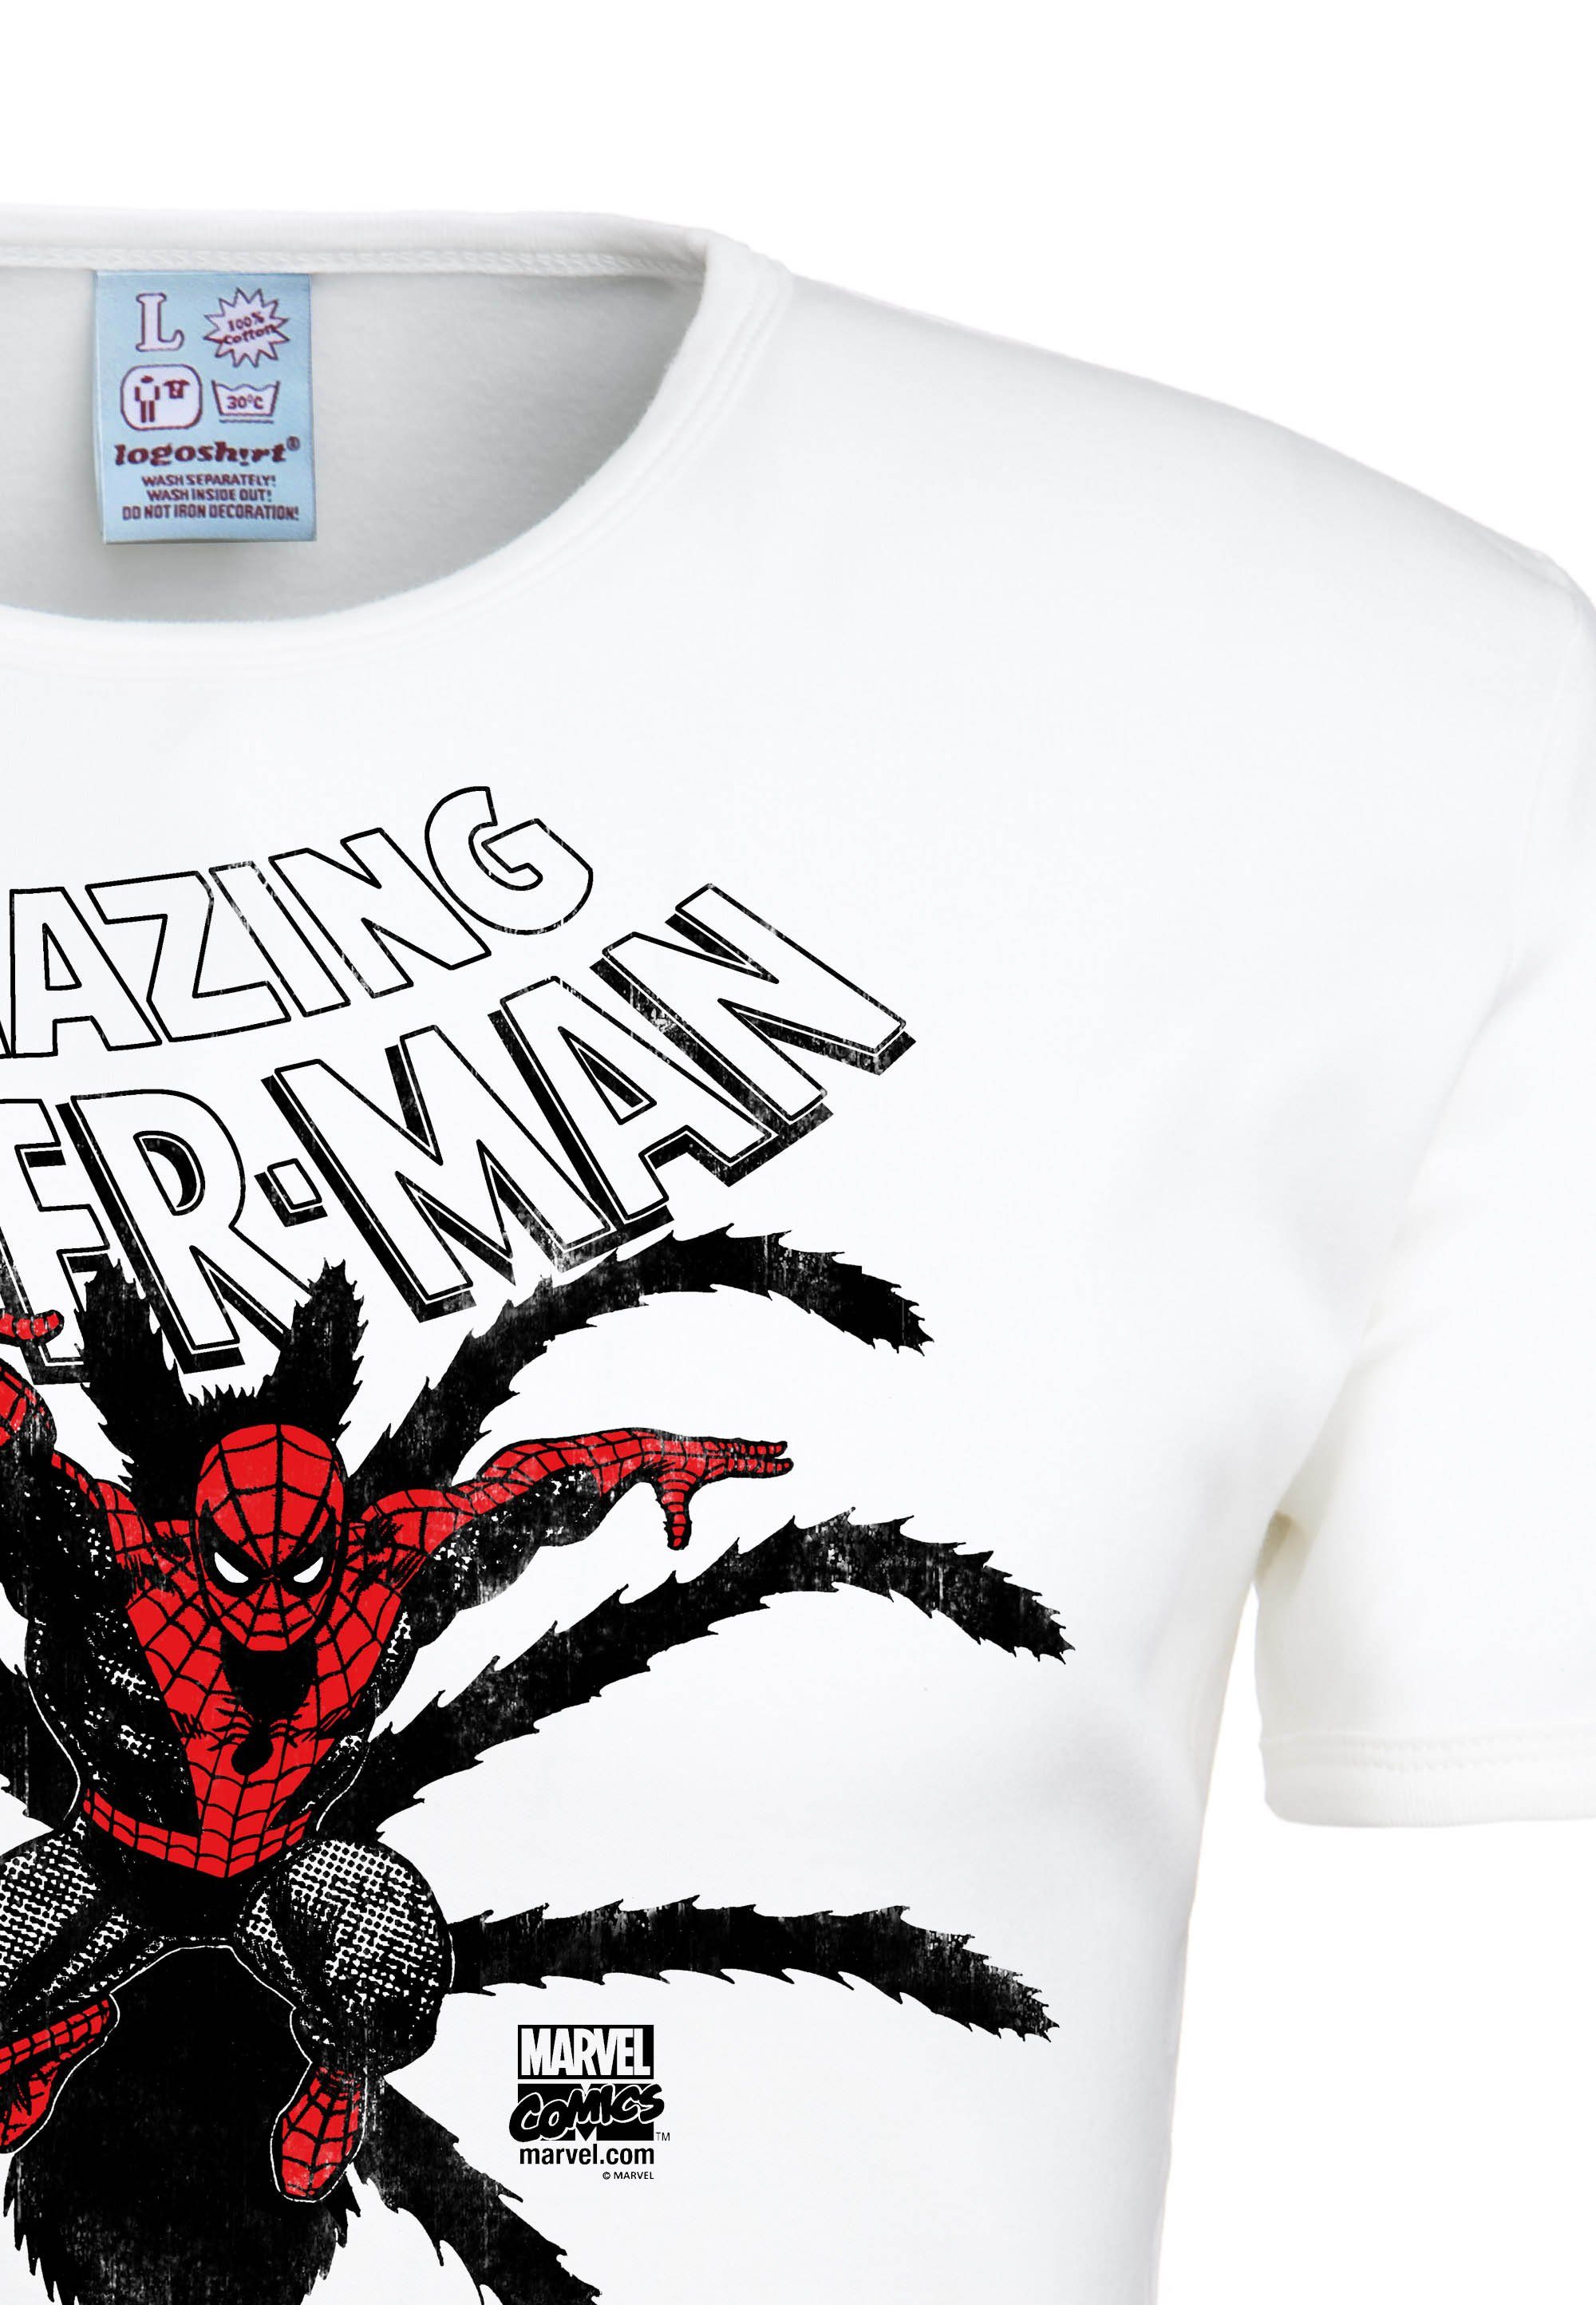 LOGOSHIRT T-Shirt Spider-Man Birth lizenzierten Originaldesign mit